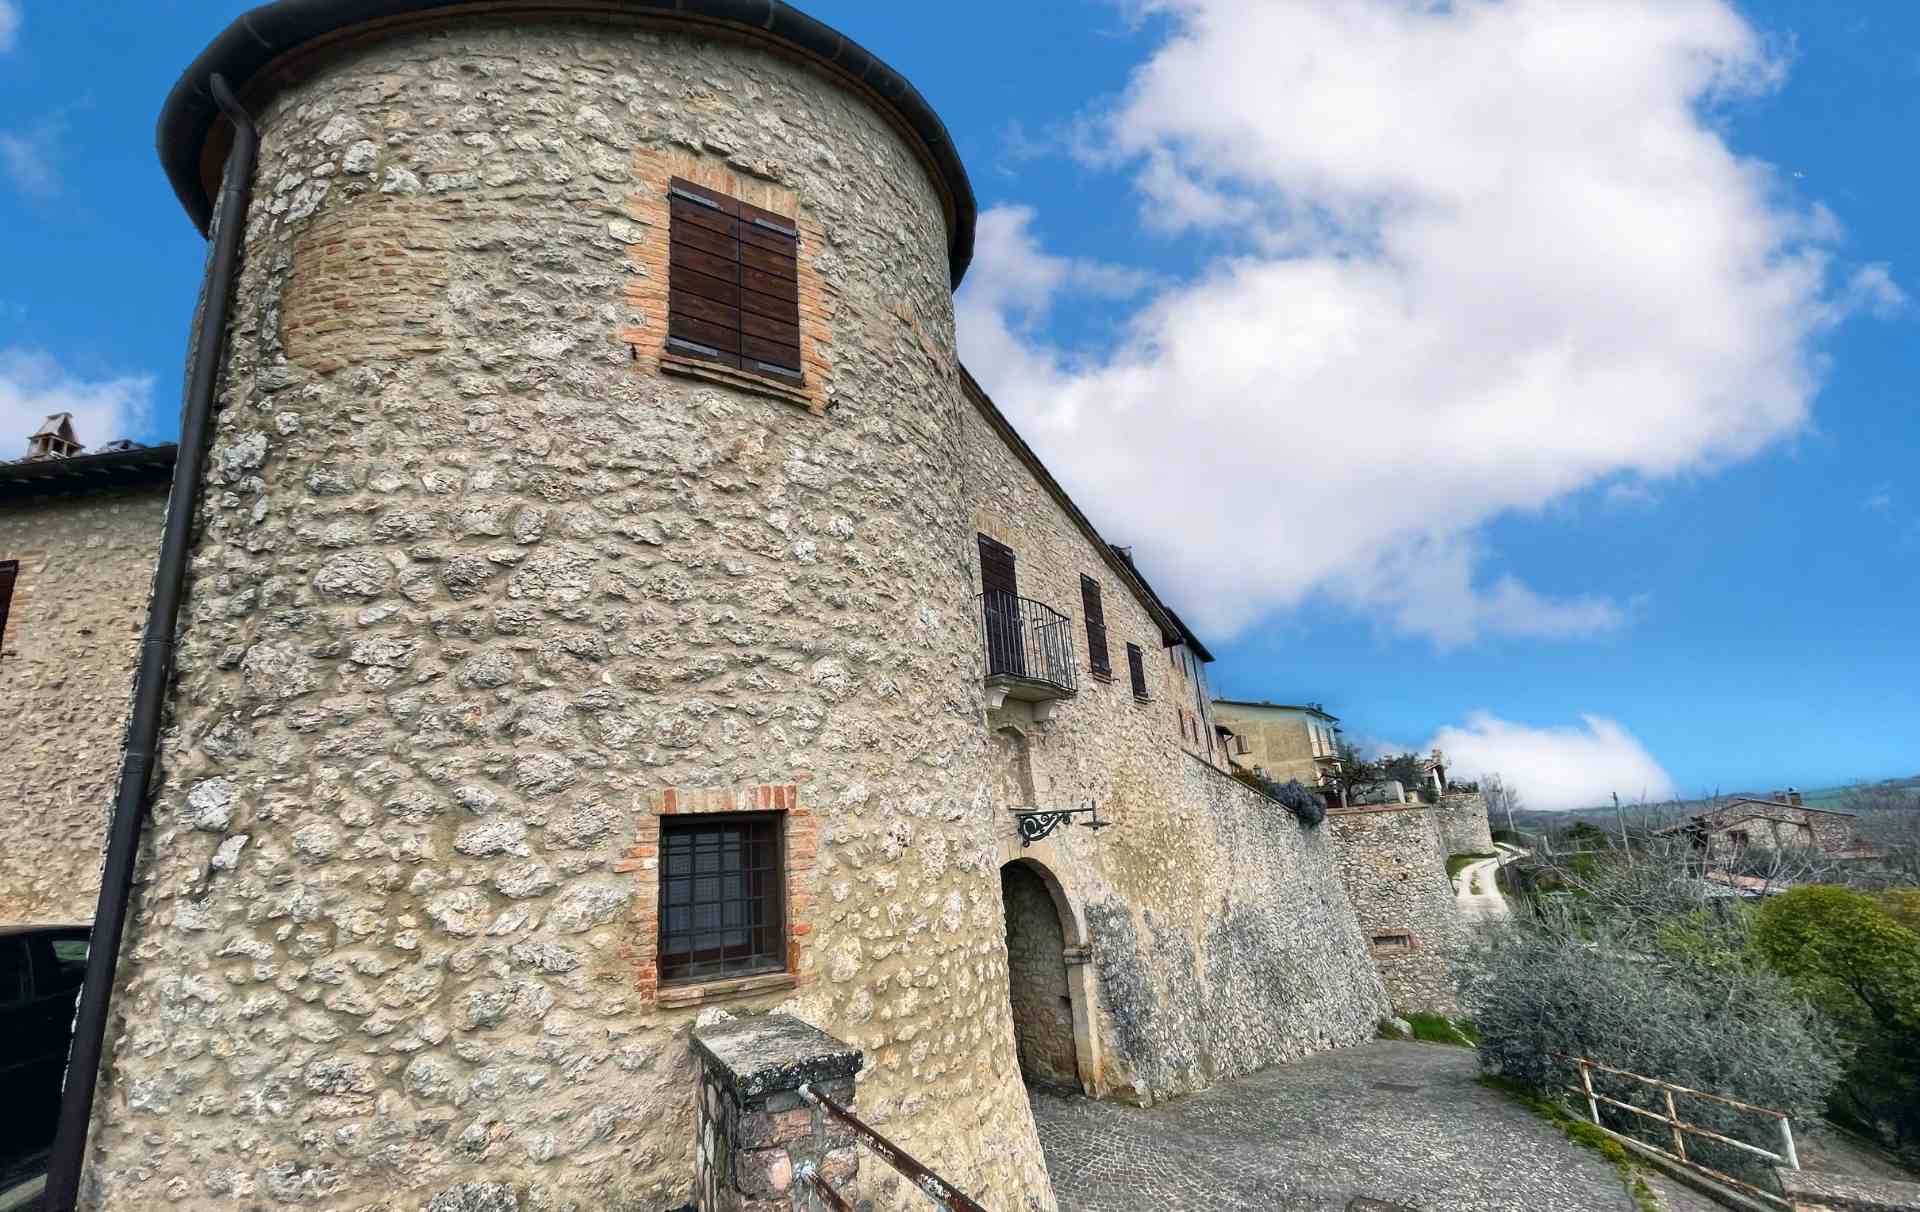 Ingresso al castello di Capitone con la torre di difesa